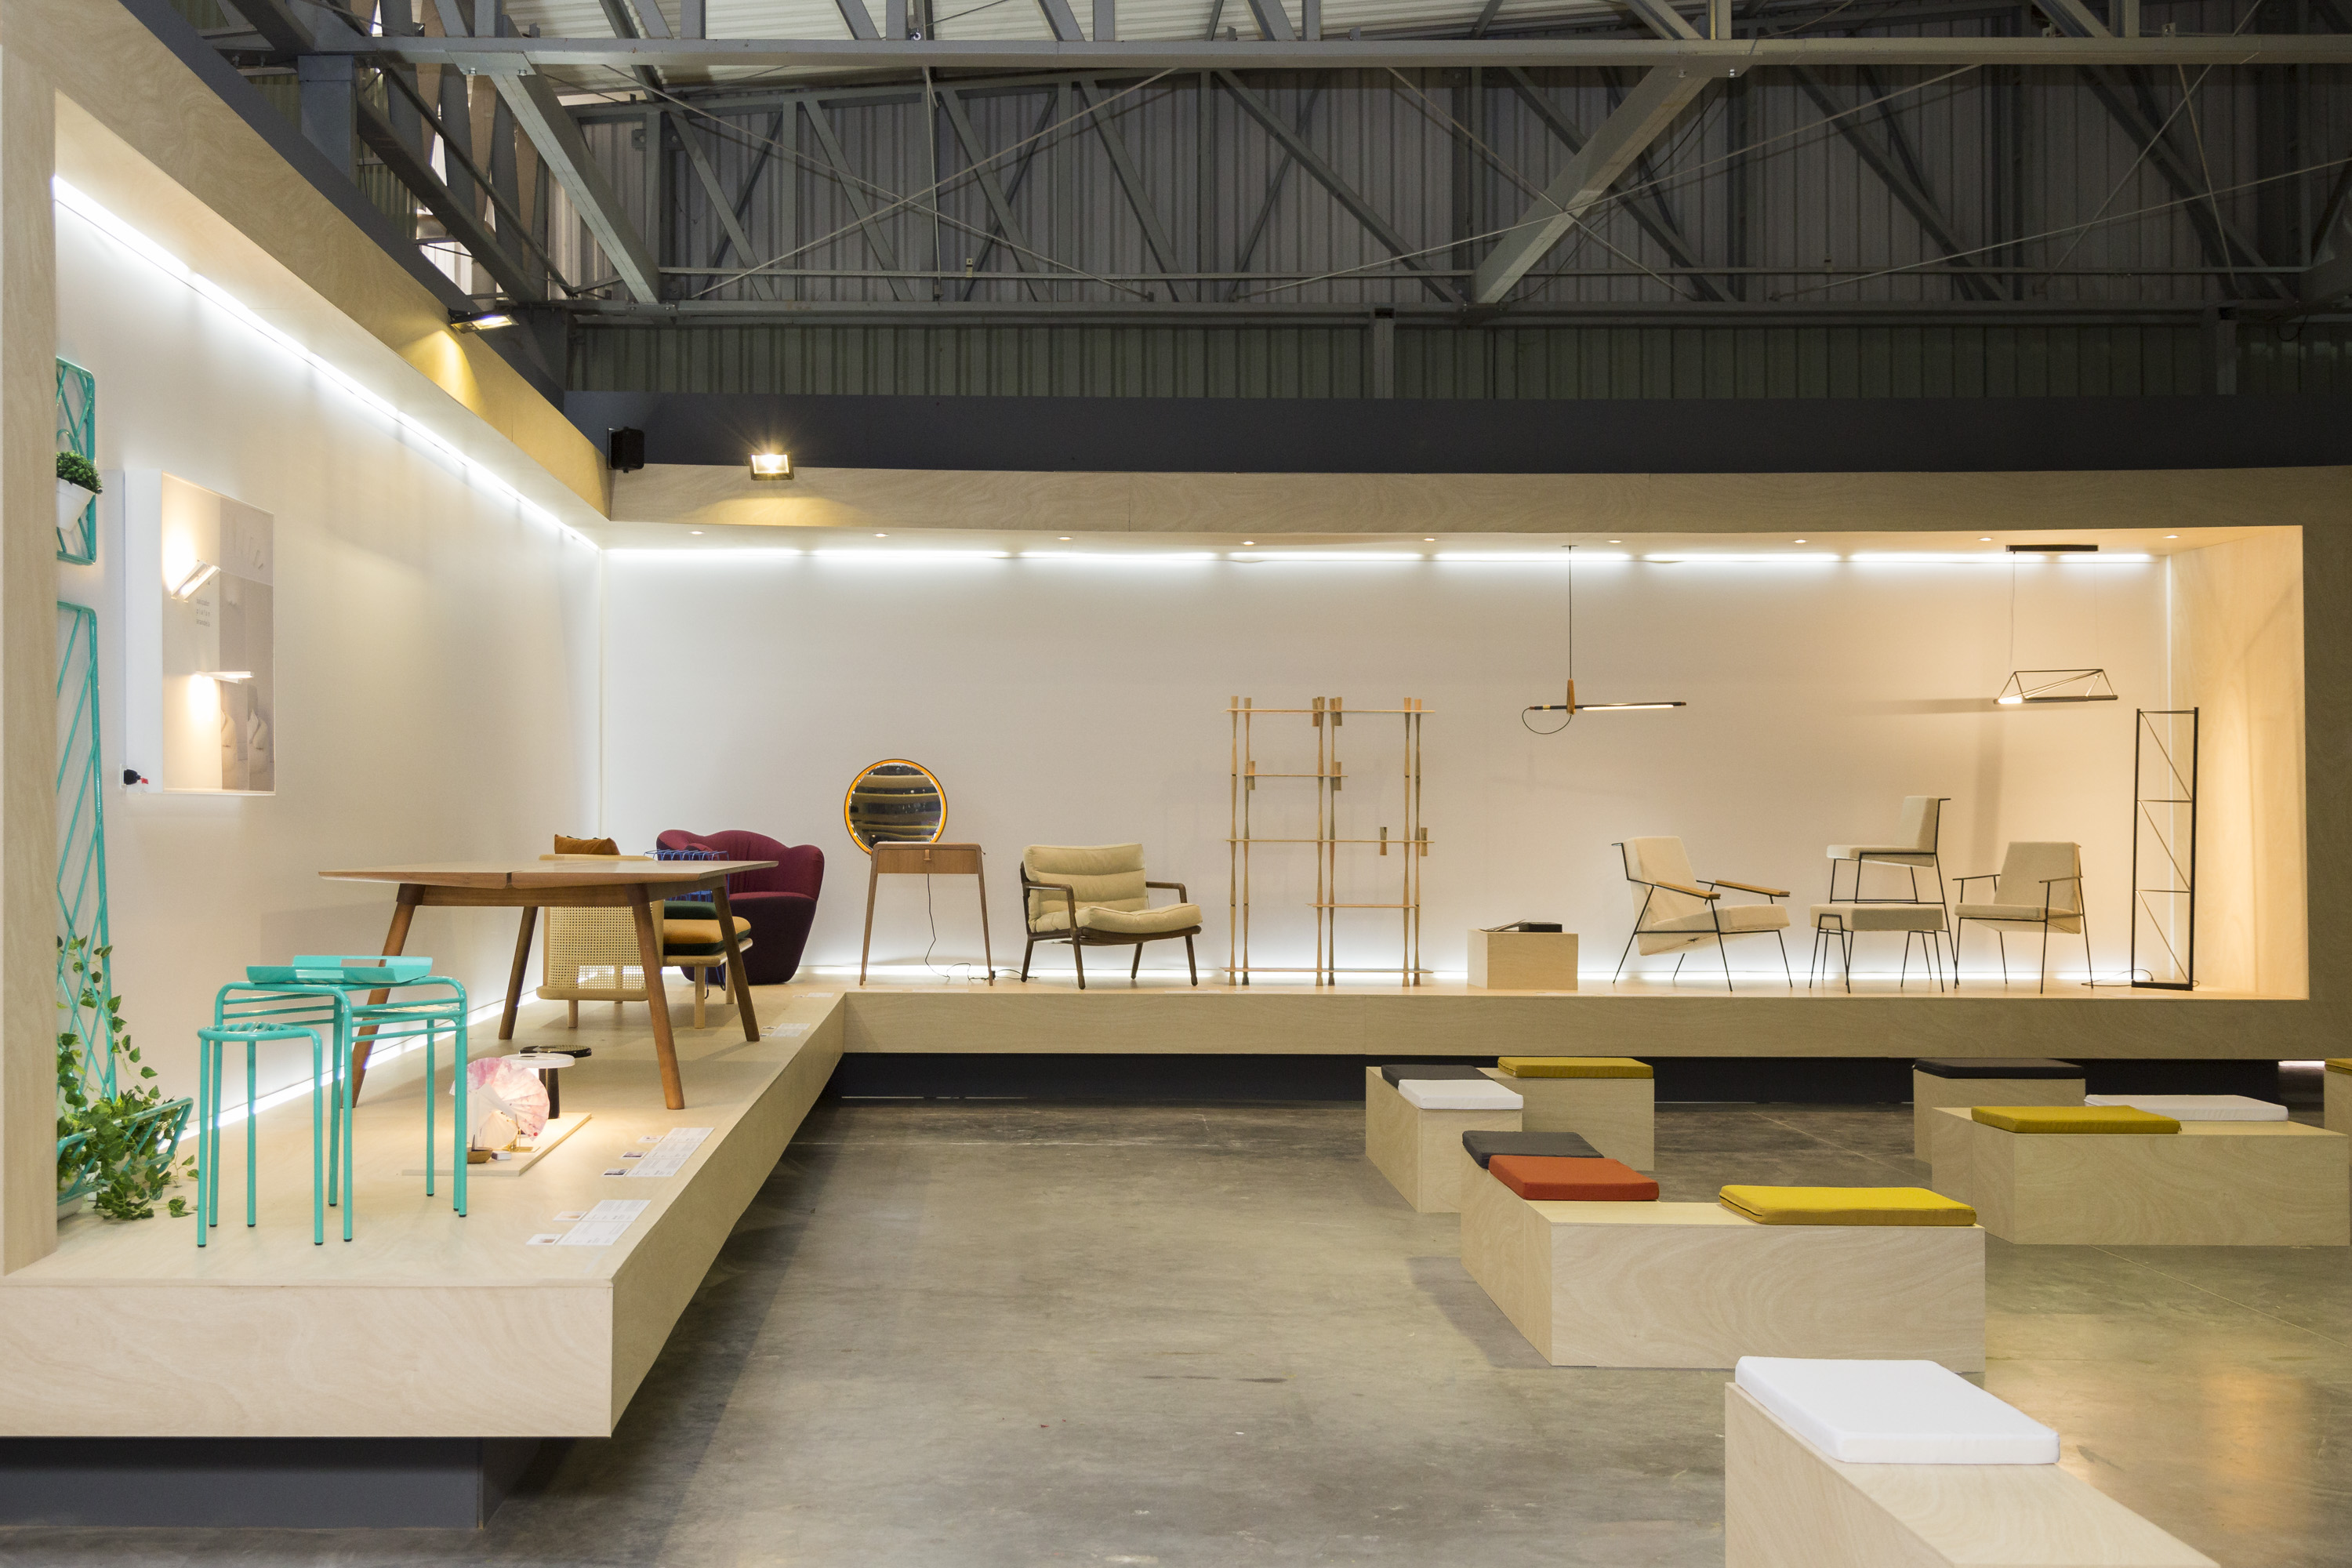 Prêmio Salão Design abre inscrições para projetos de mobiliário em cinco categorias